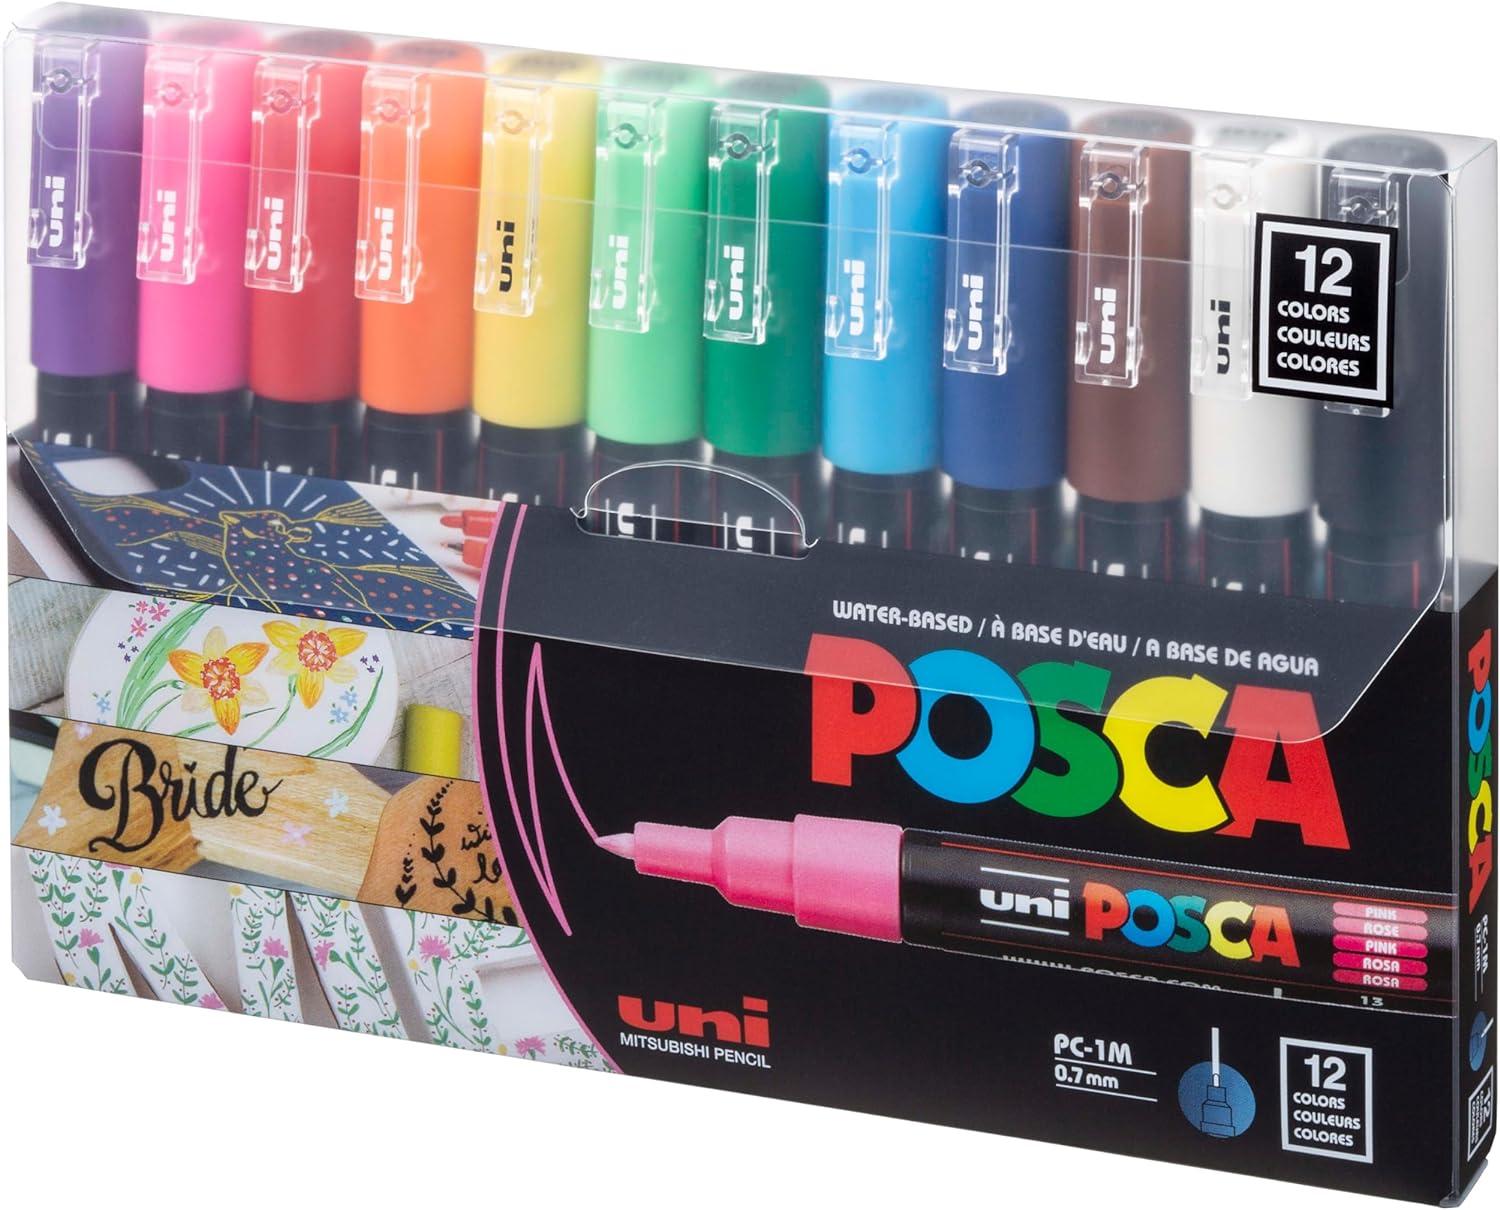 chalkola extra fine tip white chalk markers 4 pack 1mm point chalk pens - white dry erase marker pen for